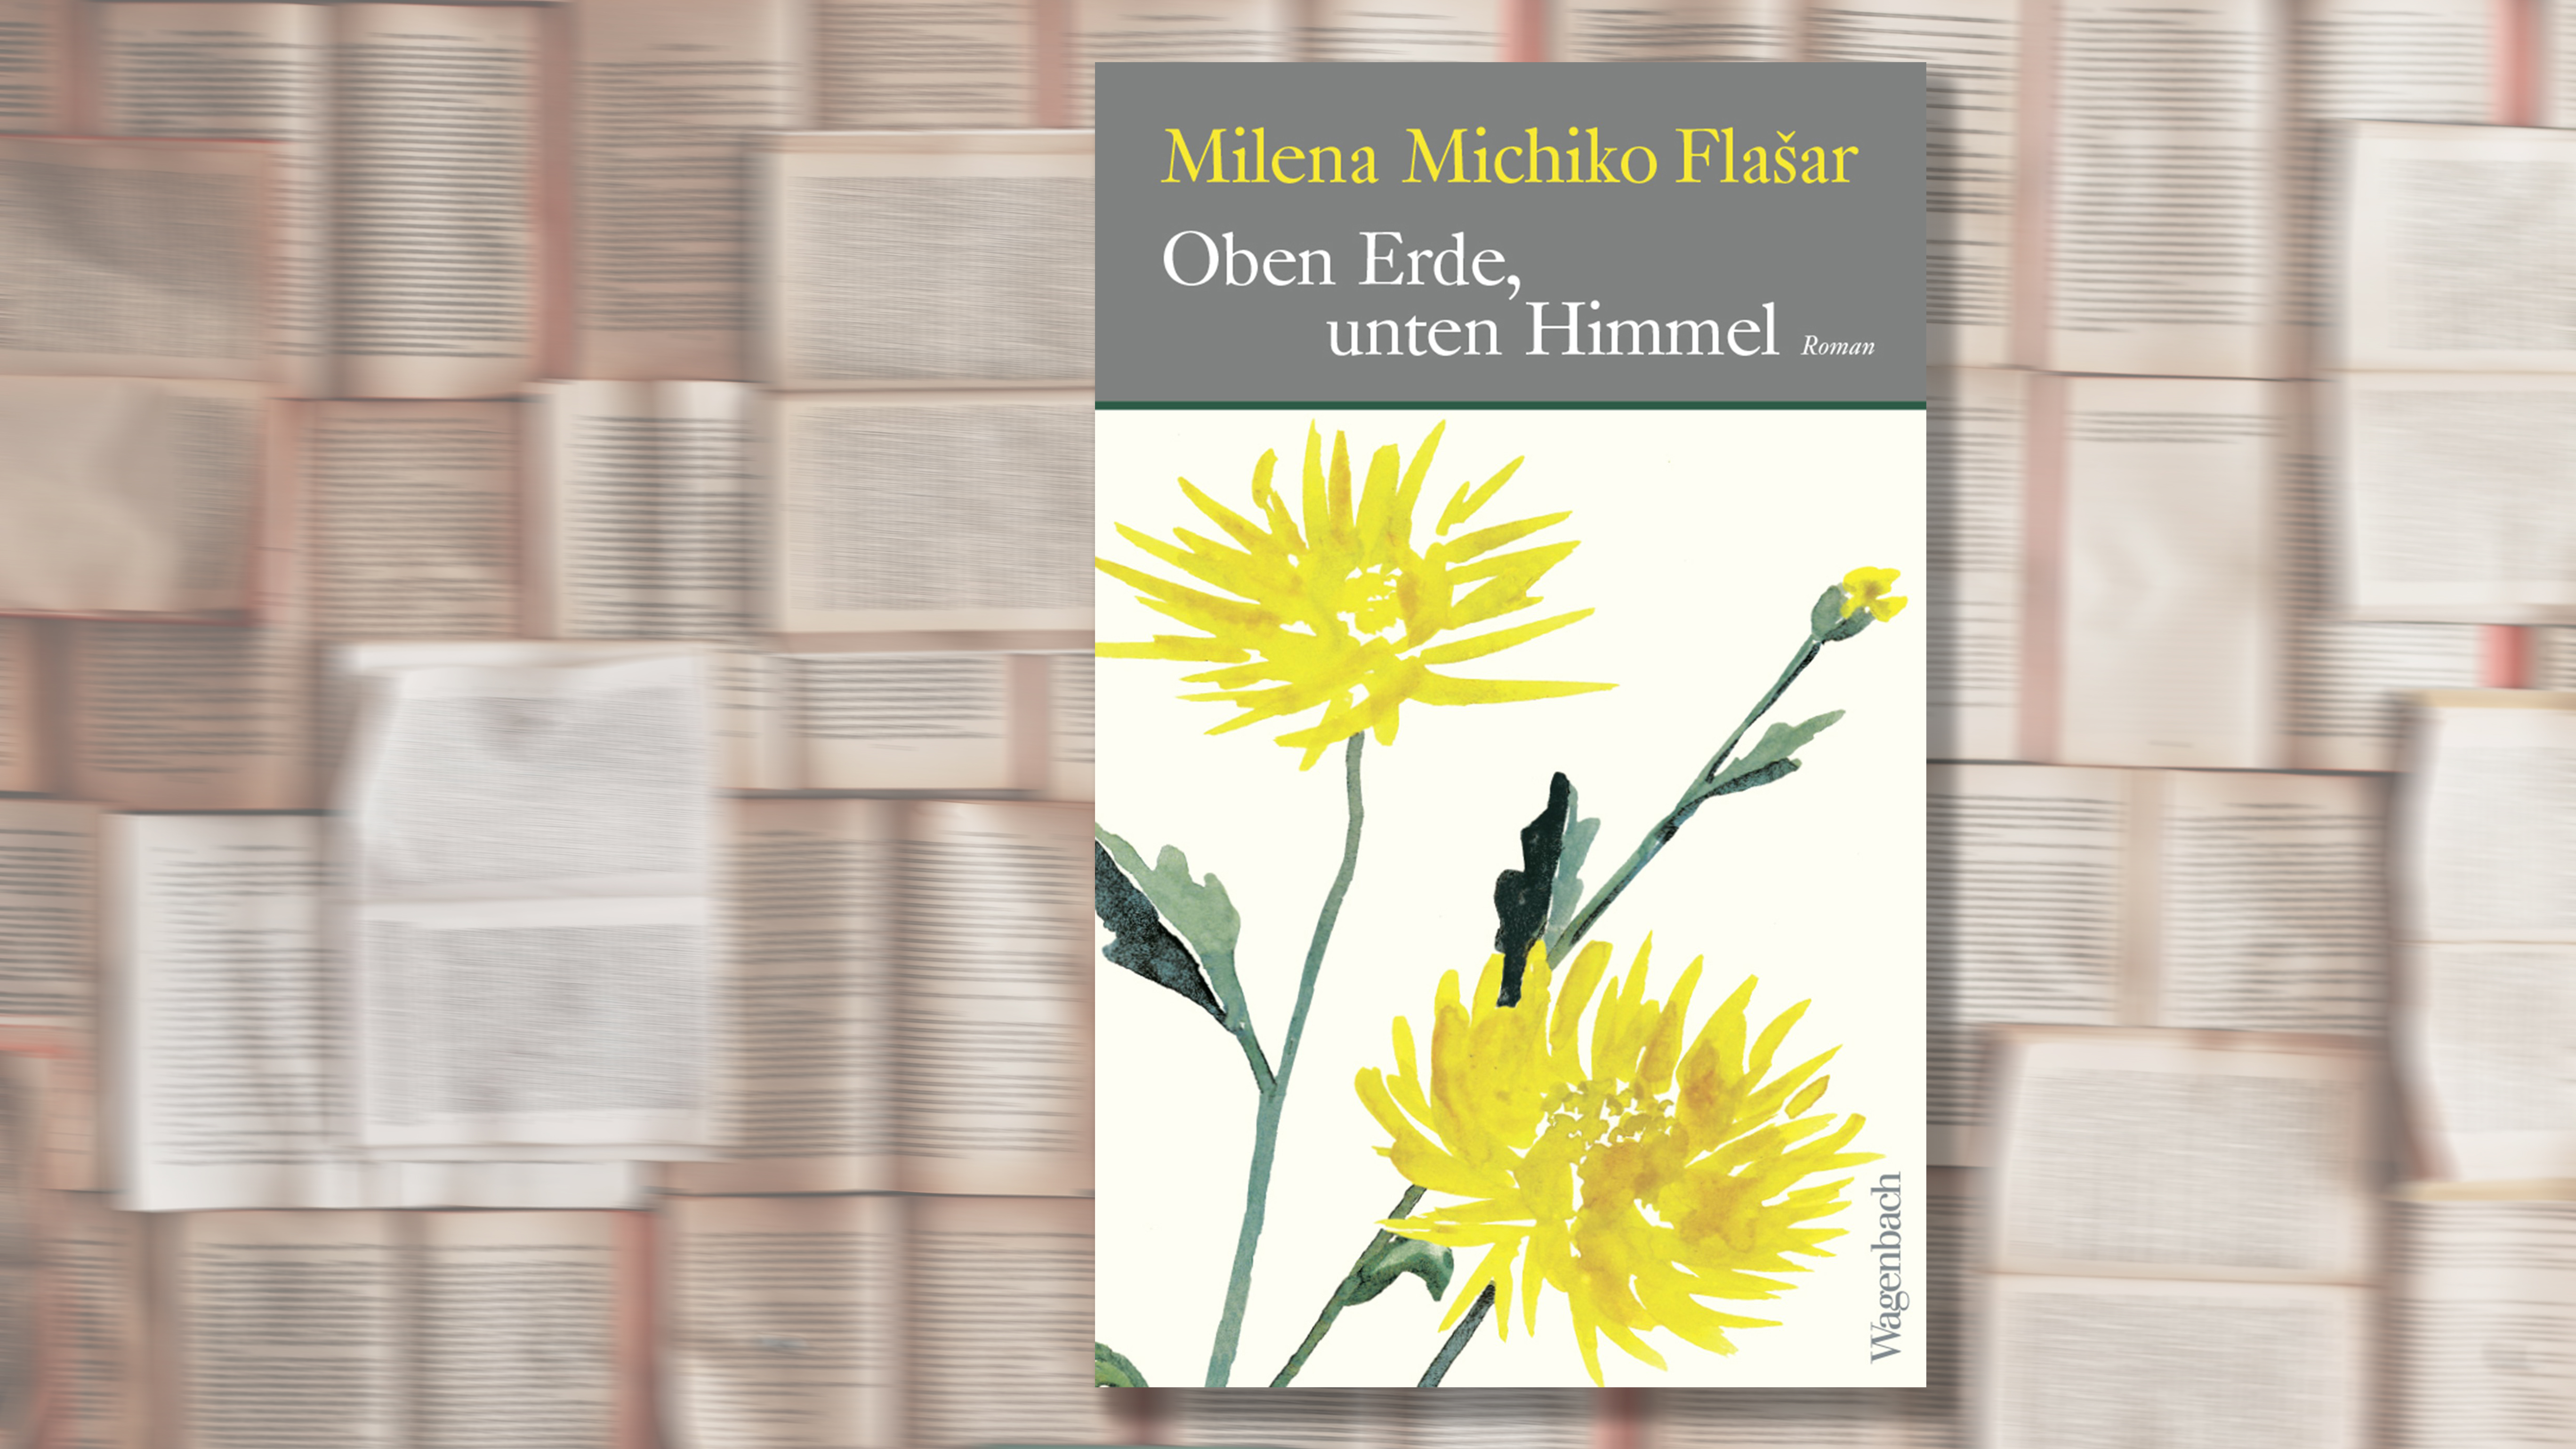 Cover des Buches "Oben Erde, unten Himmel" von Milena Michiko Flašar